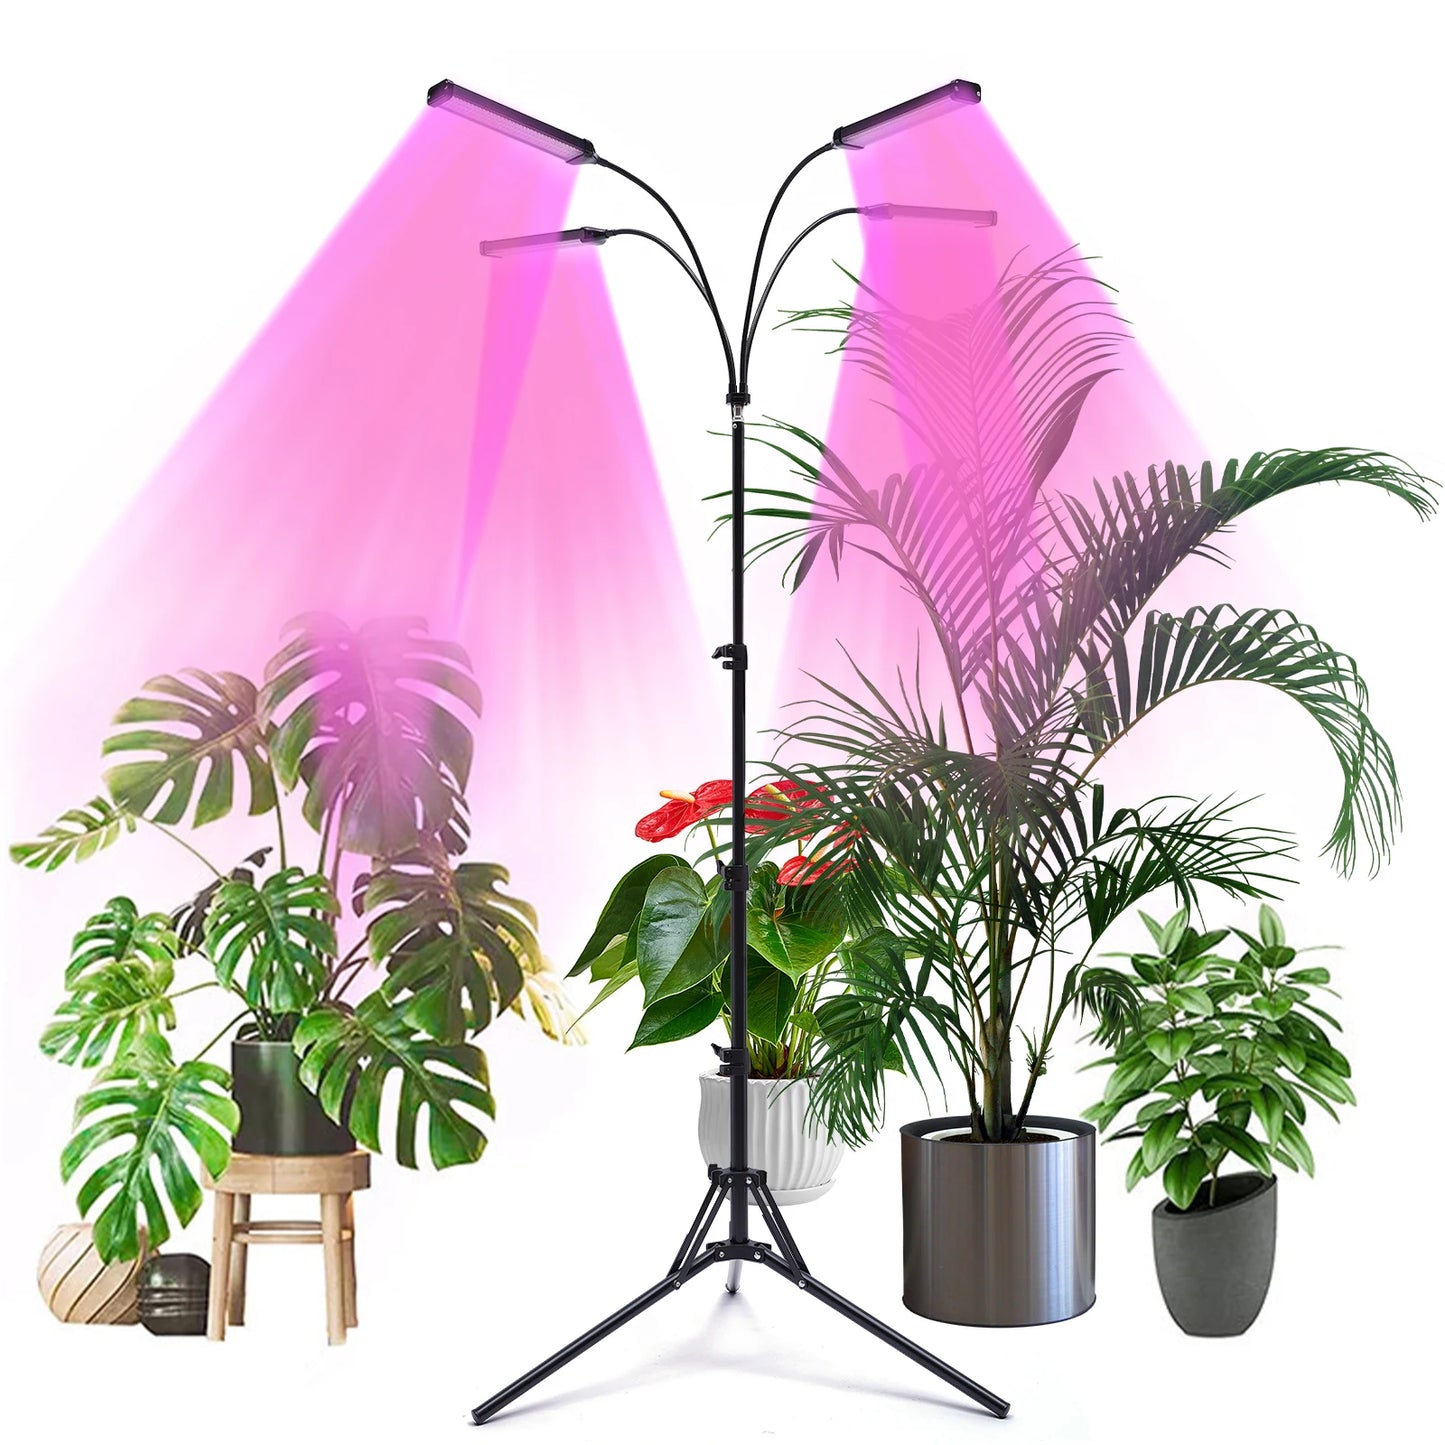 4 Kopf LED Pflanzen lampe wachsen Licht Pflanzen licht Voll spektrum Timer für Blumen Pflanzen licht Voll spektrum Timer für Blumen